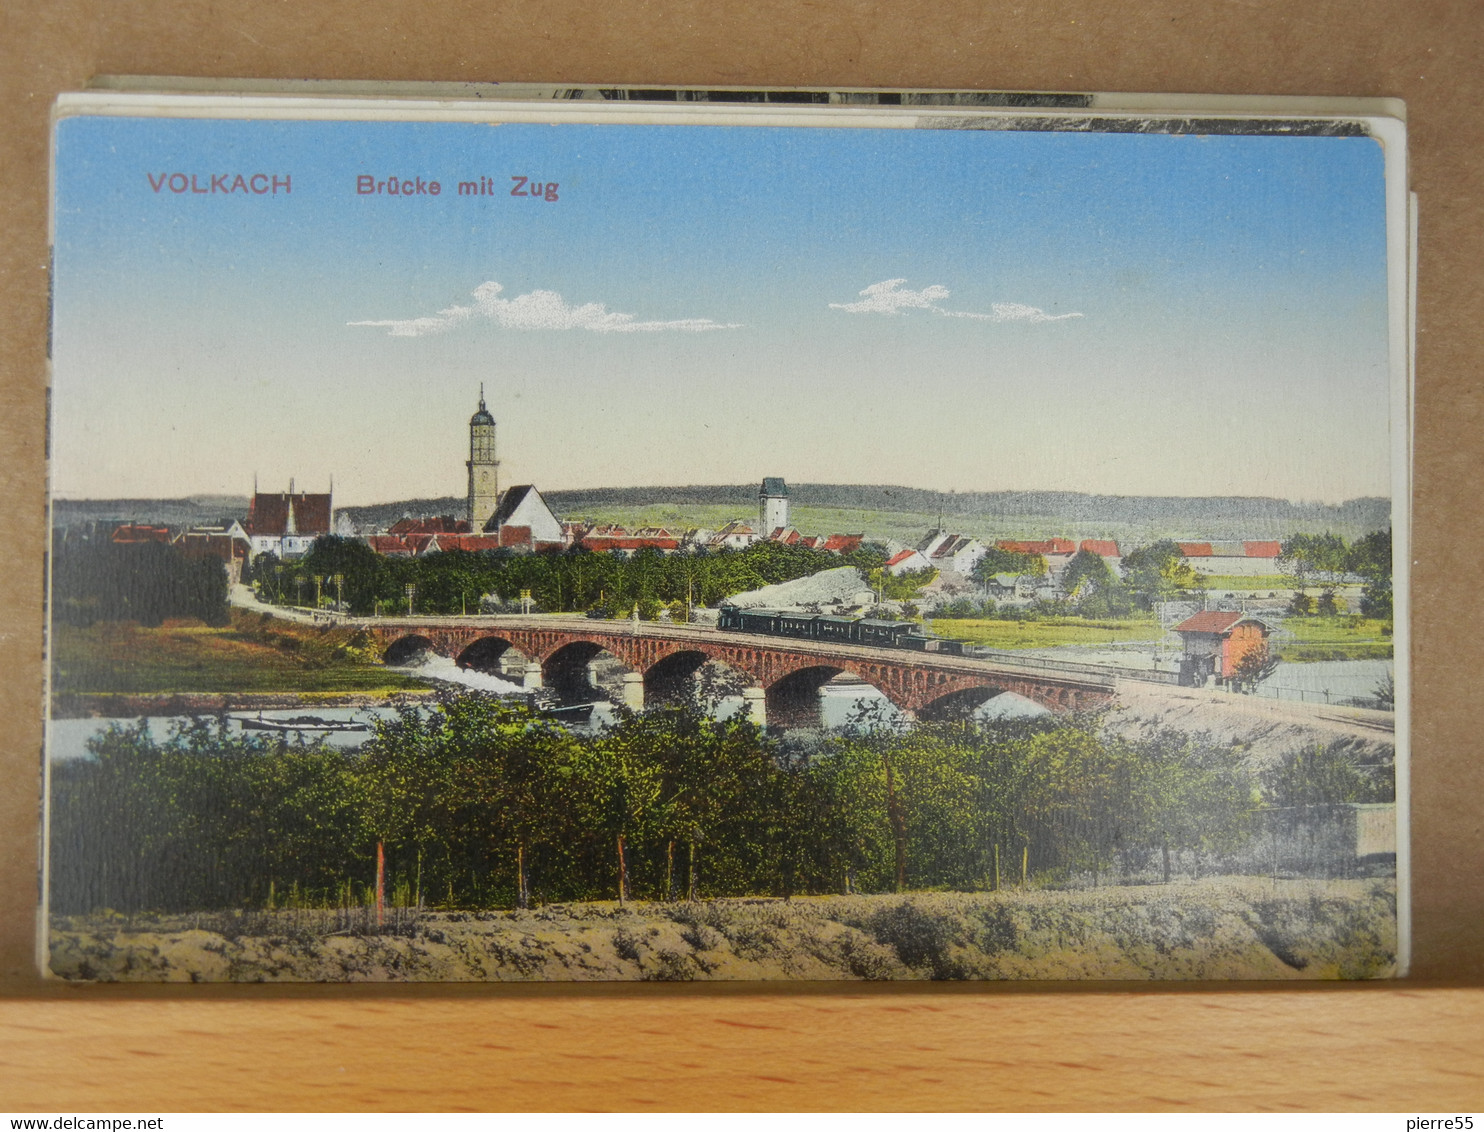 VOLKACH - BRÜCKE MIT ZUG - 1915 - TTBE, NICE CONDITION - COULEURS - Kitzingen